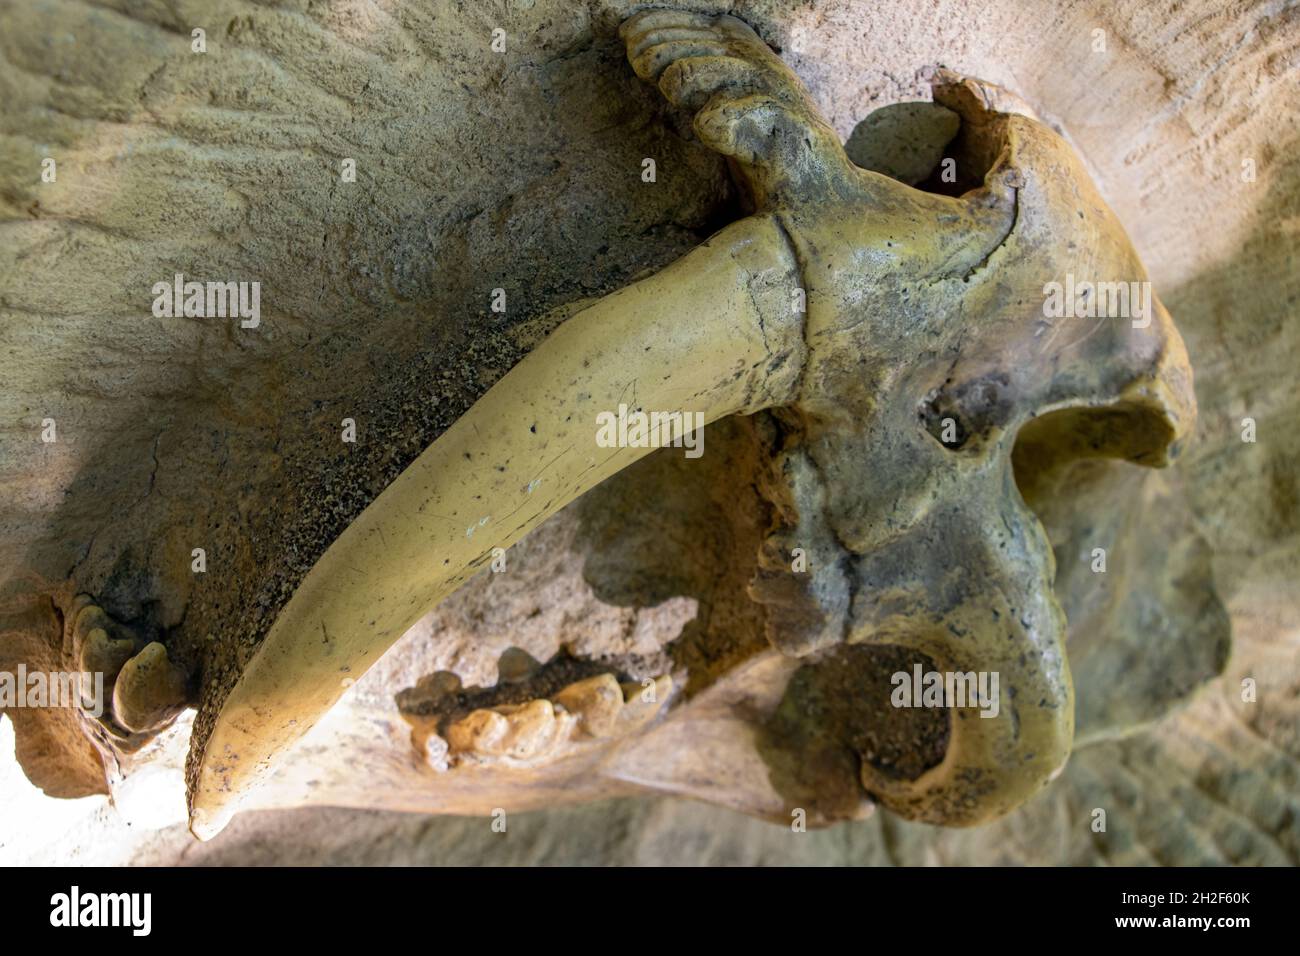 Une partie du crâne avec les dents d'un tigre à dents de sabre (Smilodon) Banque D'Images